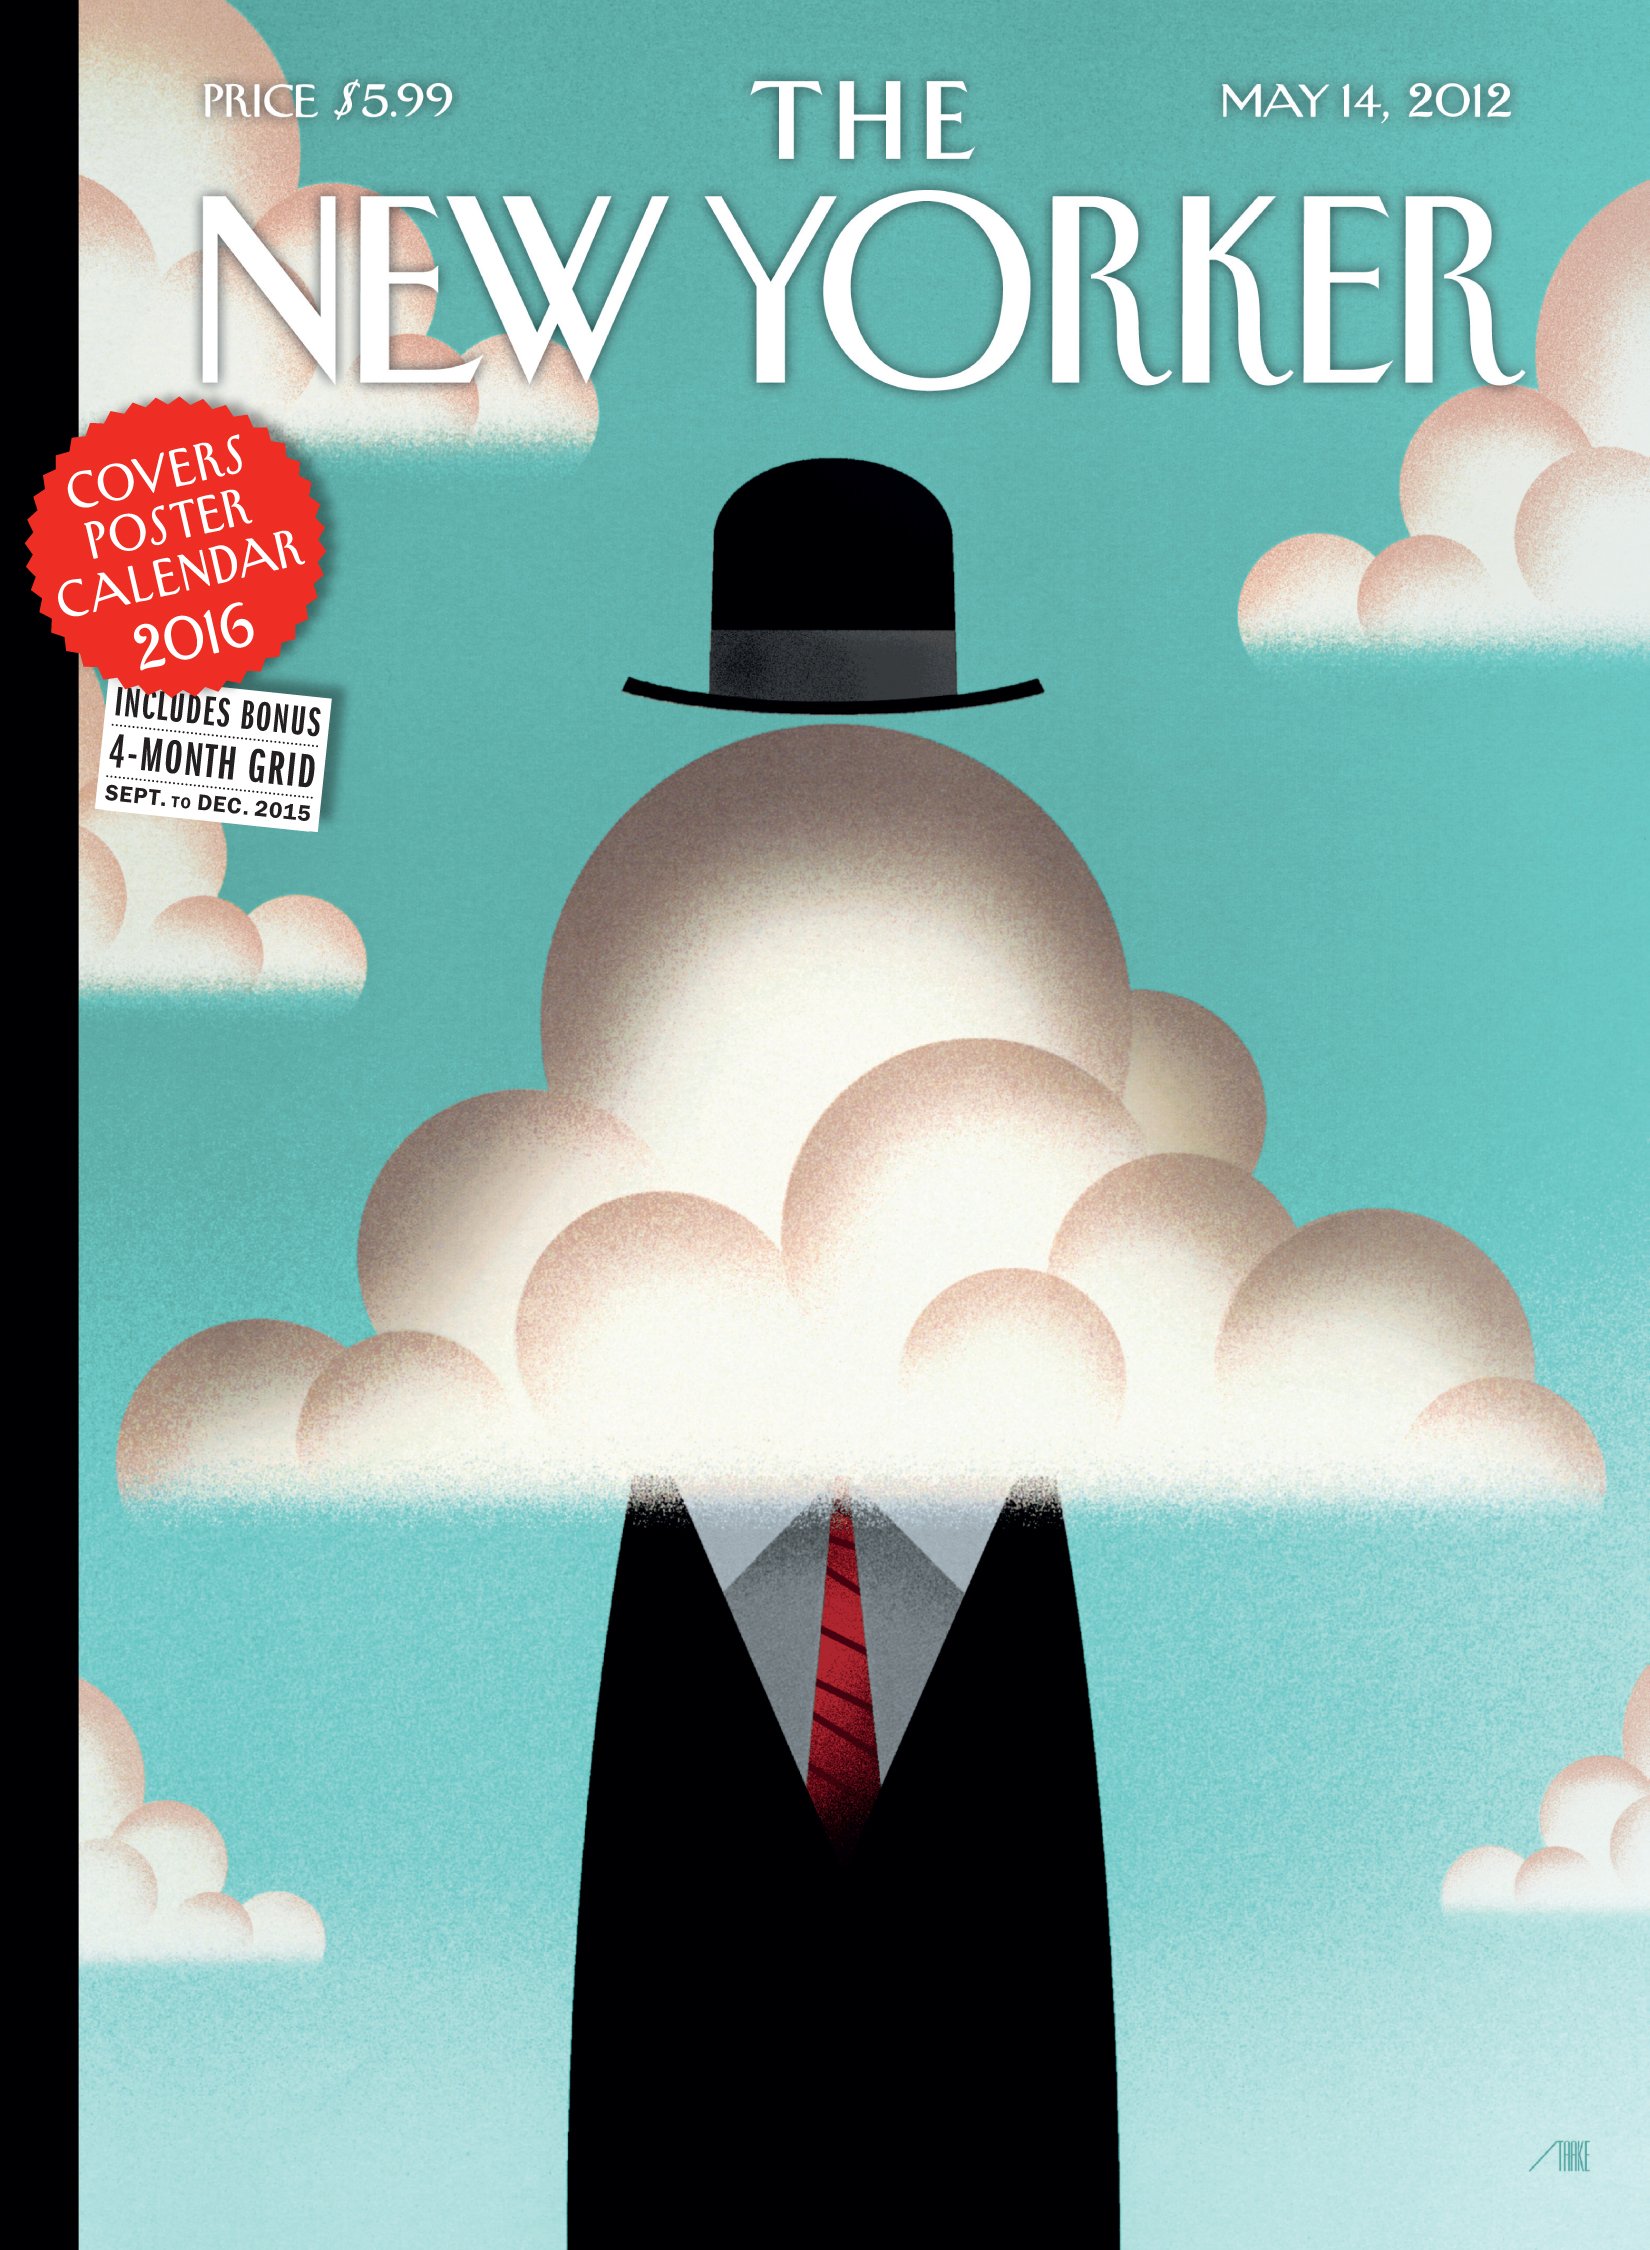 La proletarizzazione del New Yorker